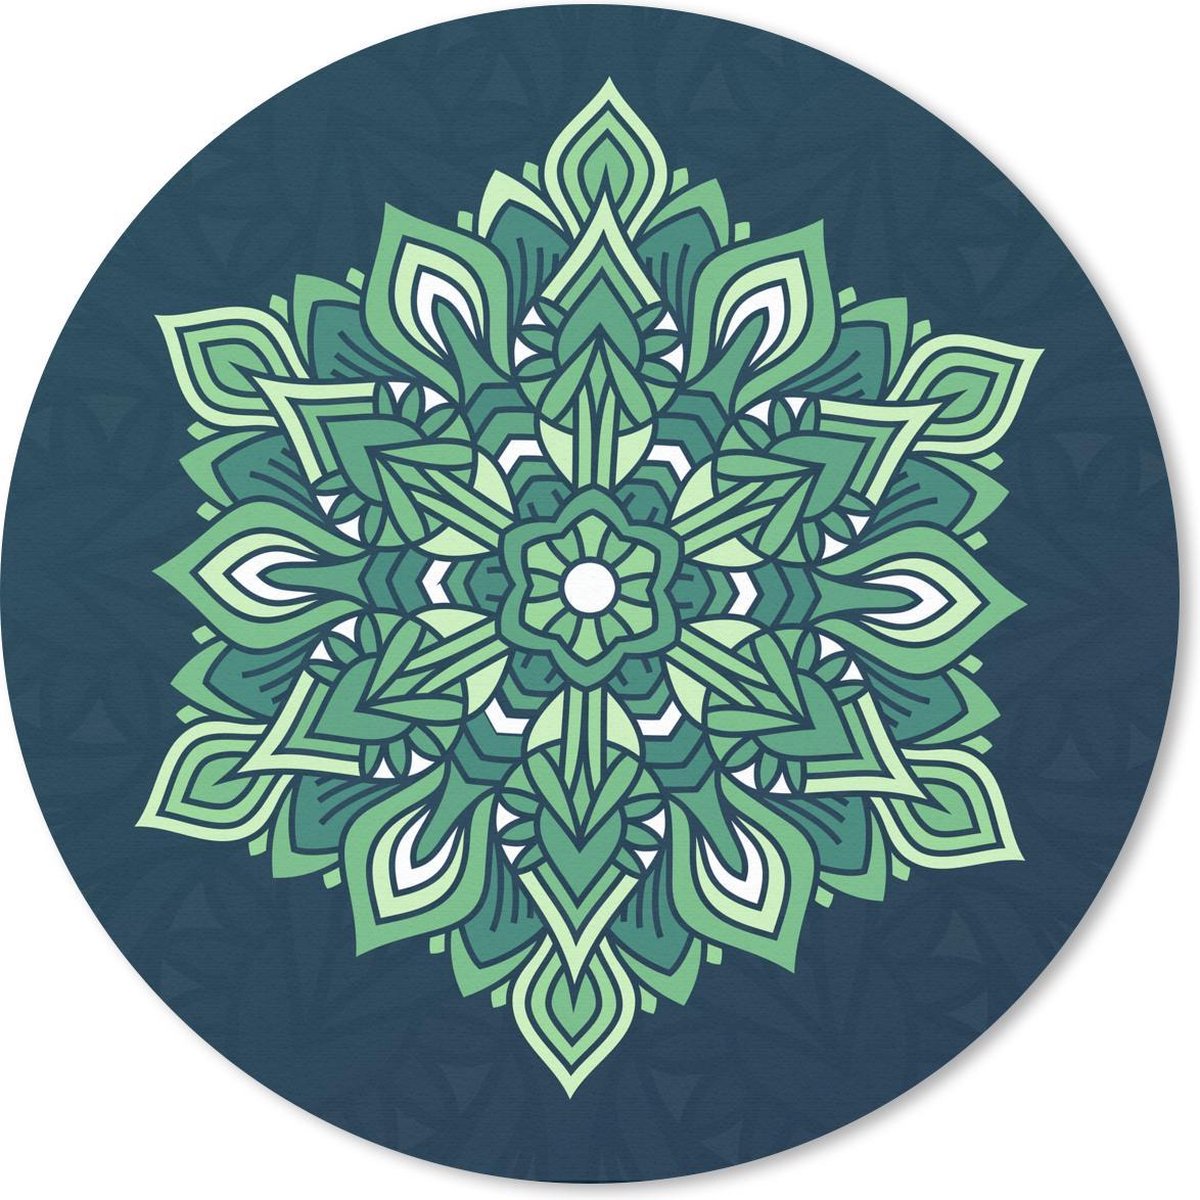 Muismat - Mousepad - Rond - Mandala abstract groen - 40x40 cm - Ronde muismat